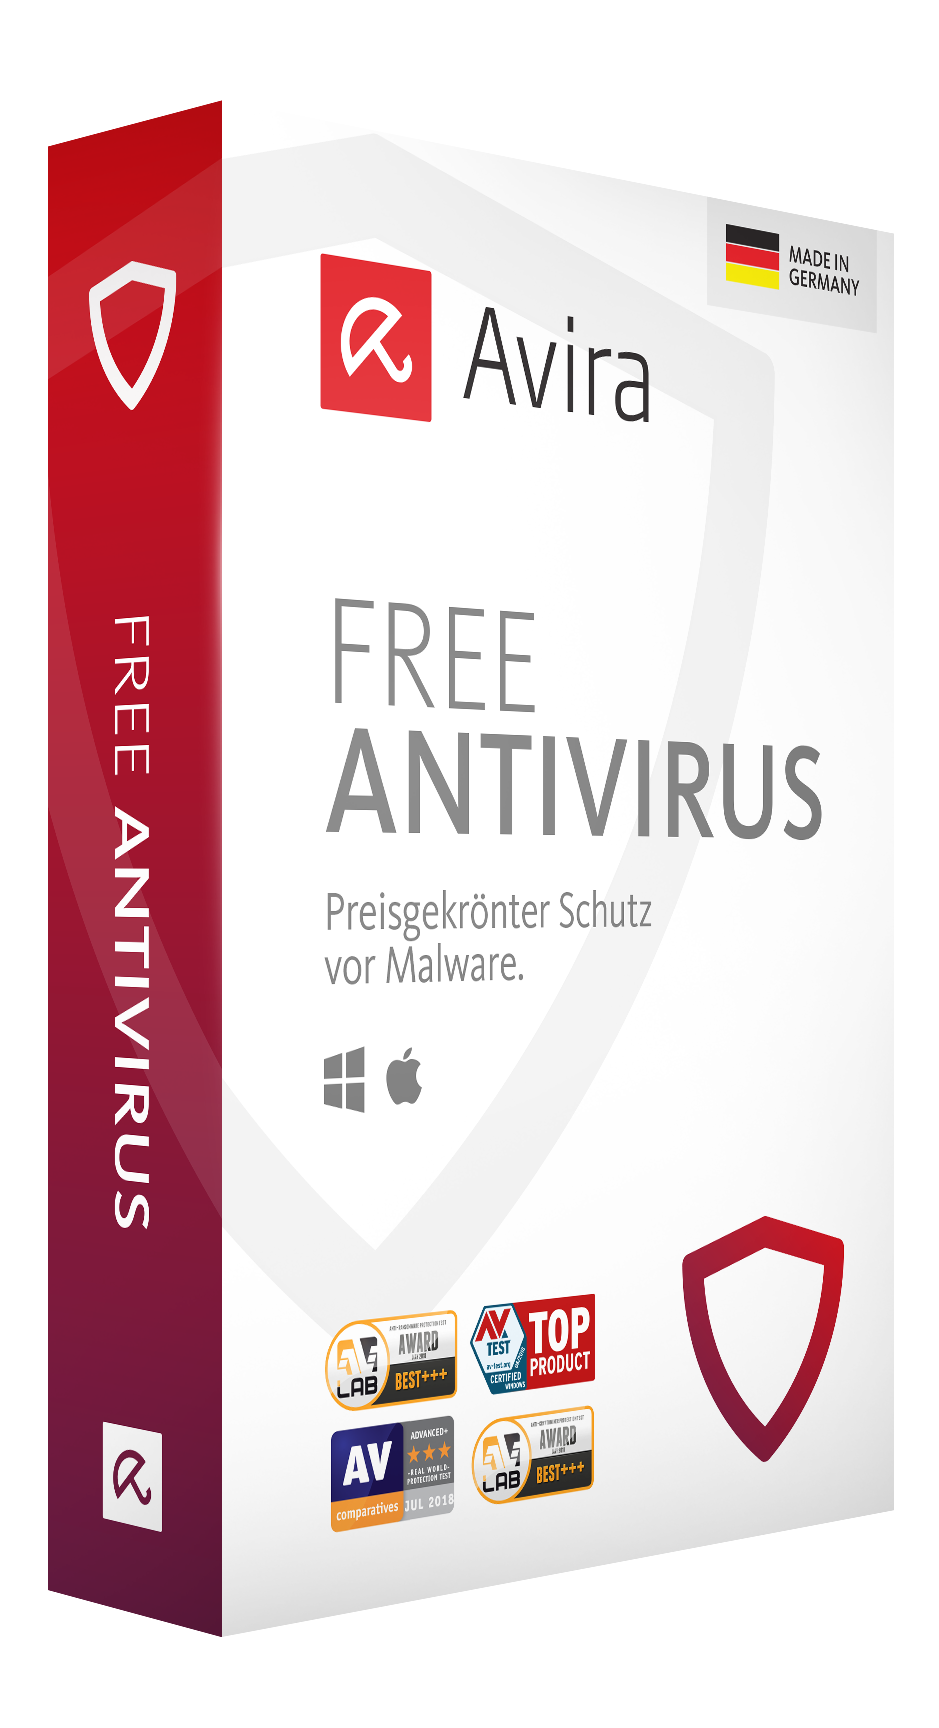 download avira antivirus for windows 10 free